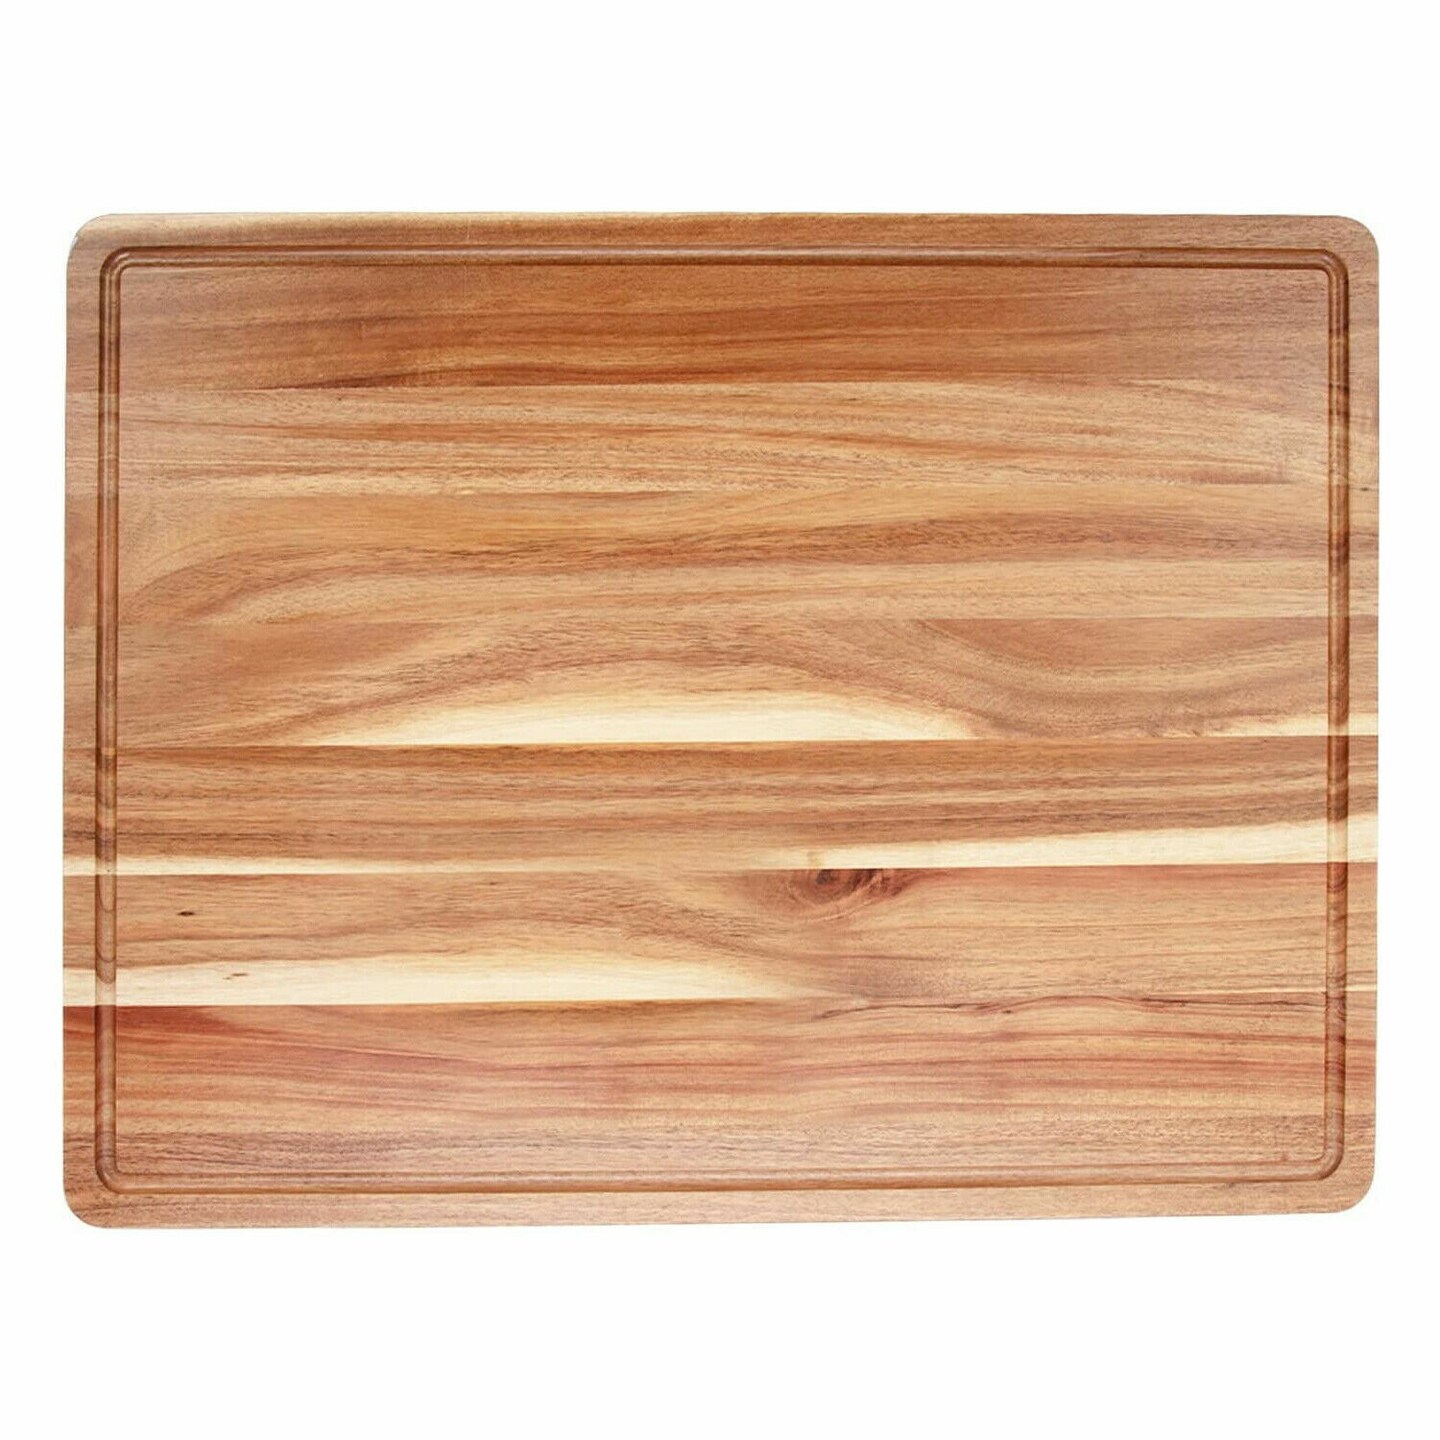 24x18x1.2 Inches Heavy Duty Wood Cutting Board